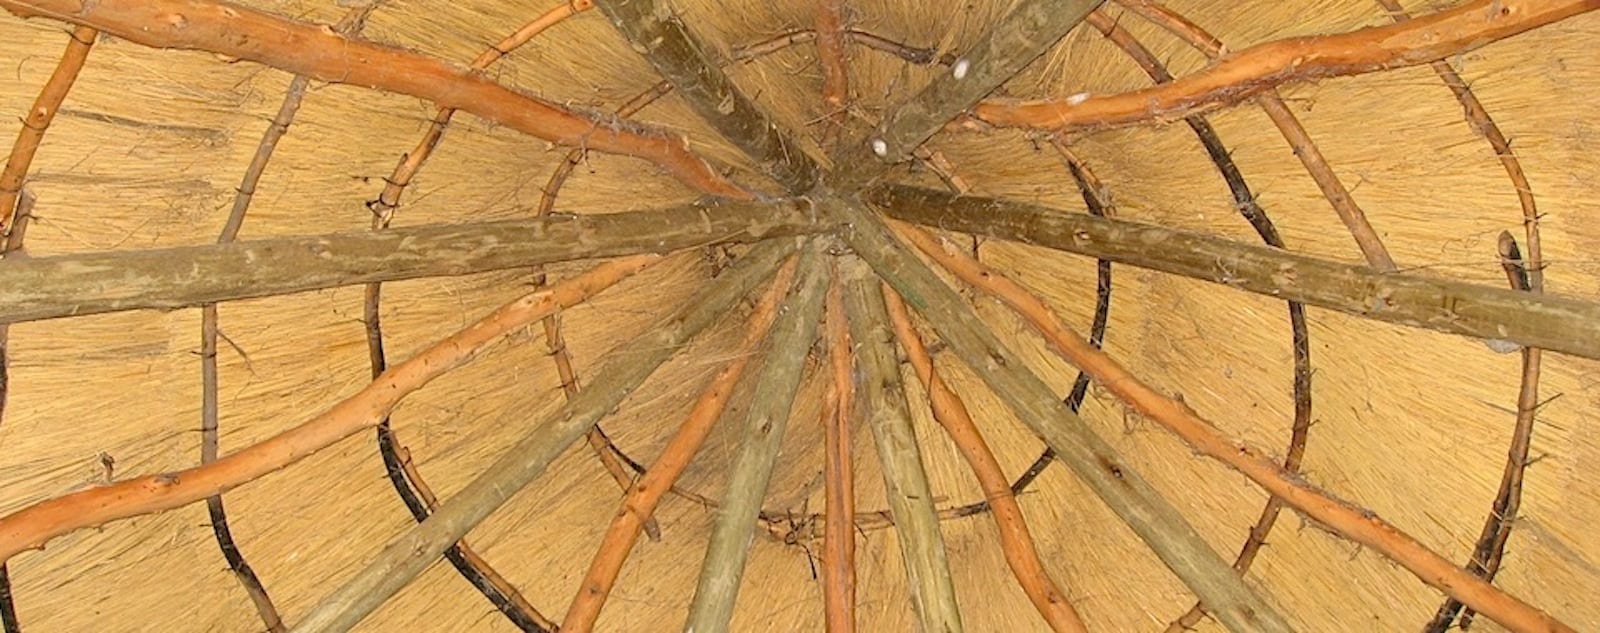 Schilfdach einer Lehmhütte, Botswana